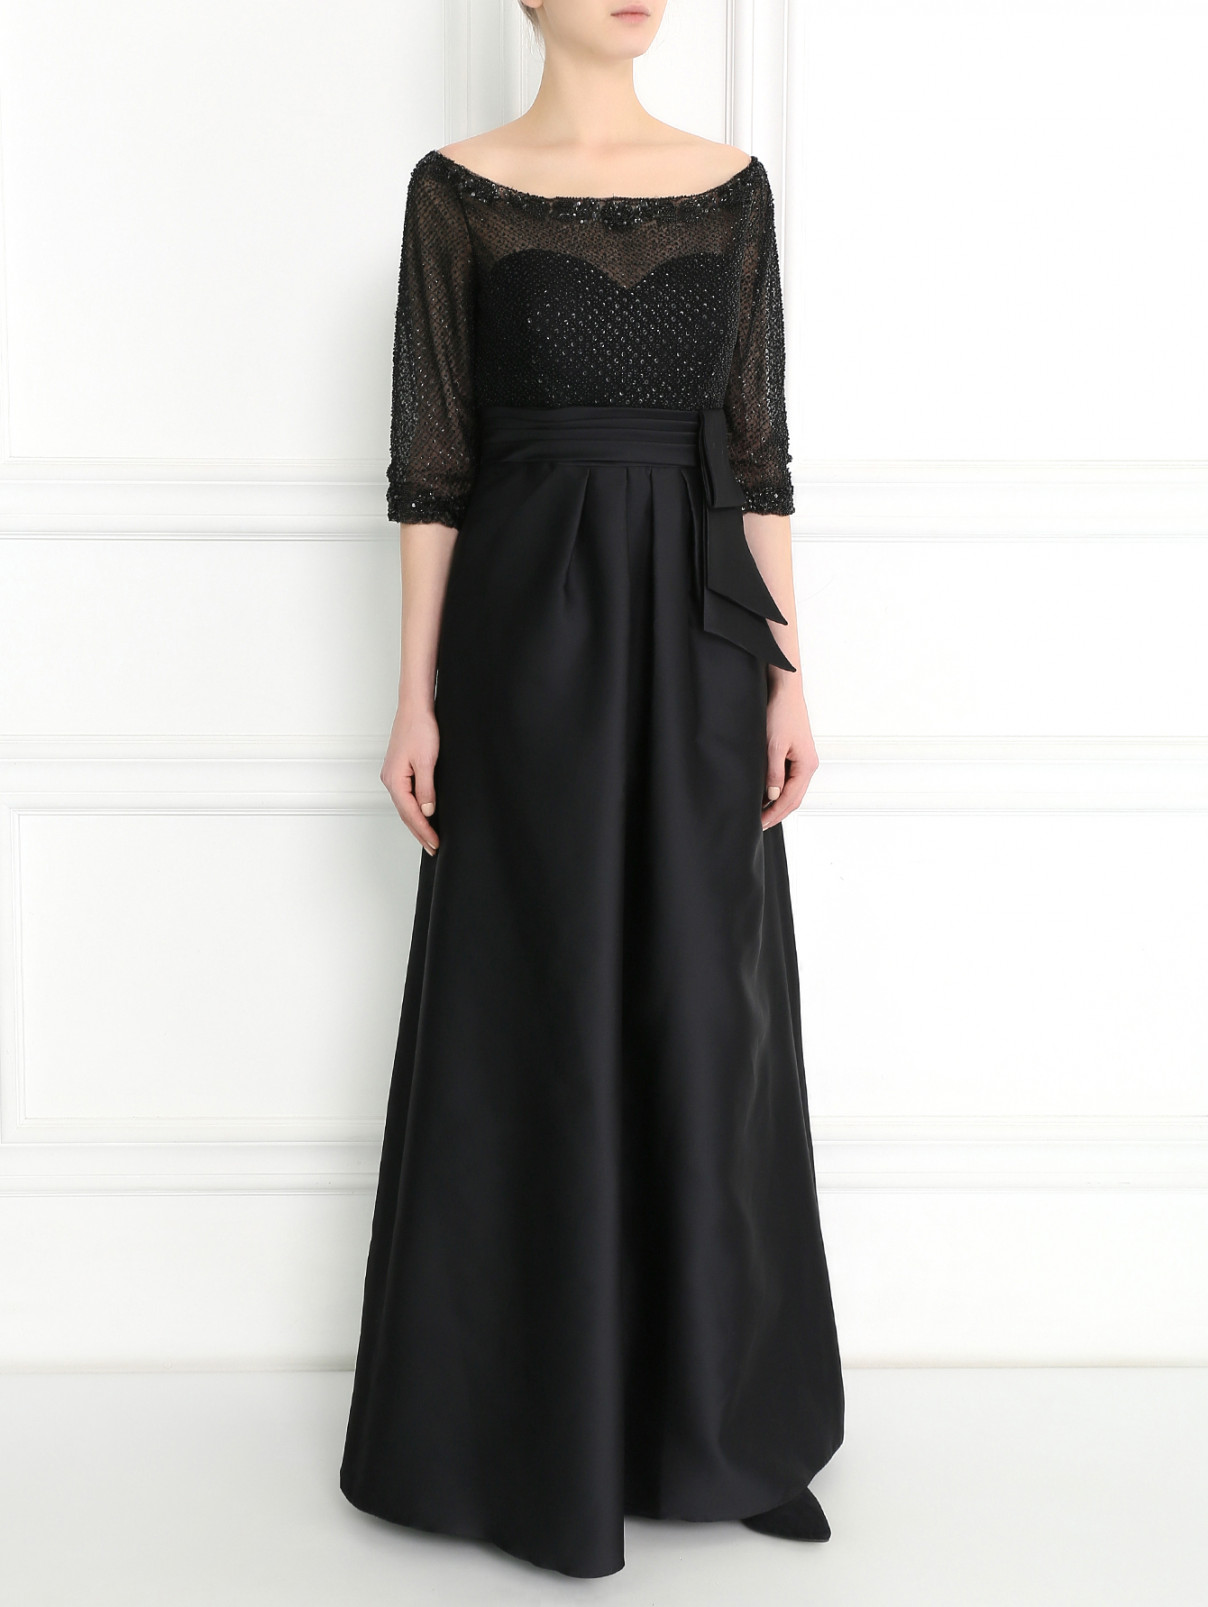 Платье-макси, декорированное бисером Rosa Clara  –  Модель Общий вид  – Цвет:  Черный